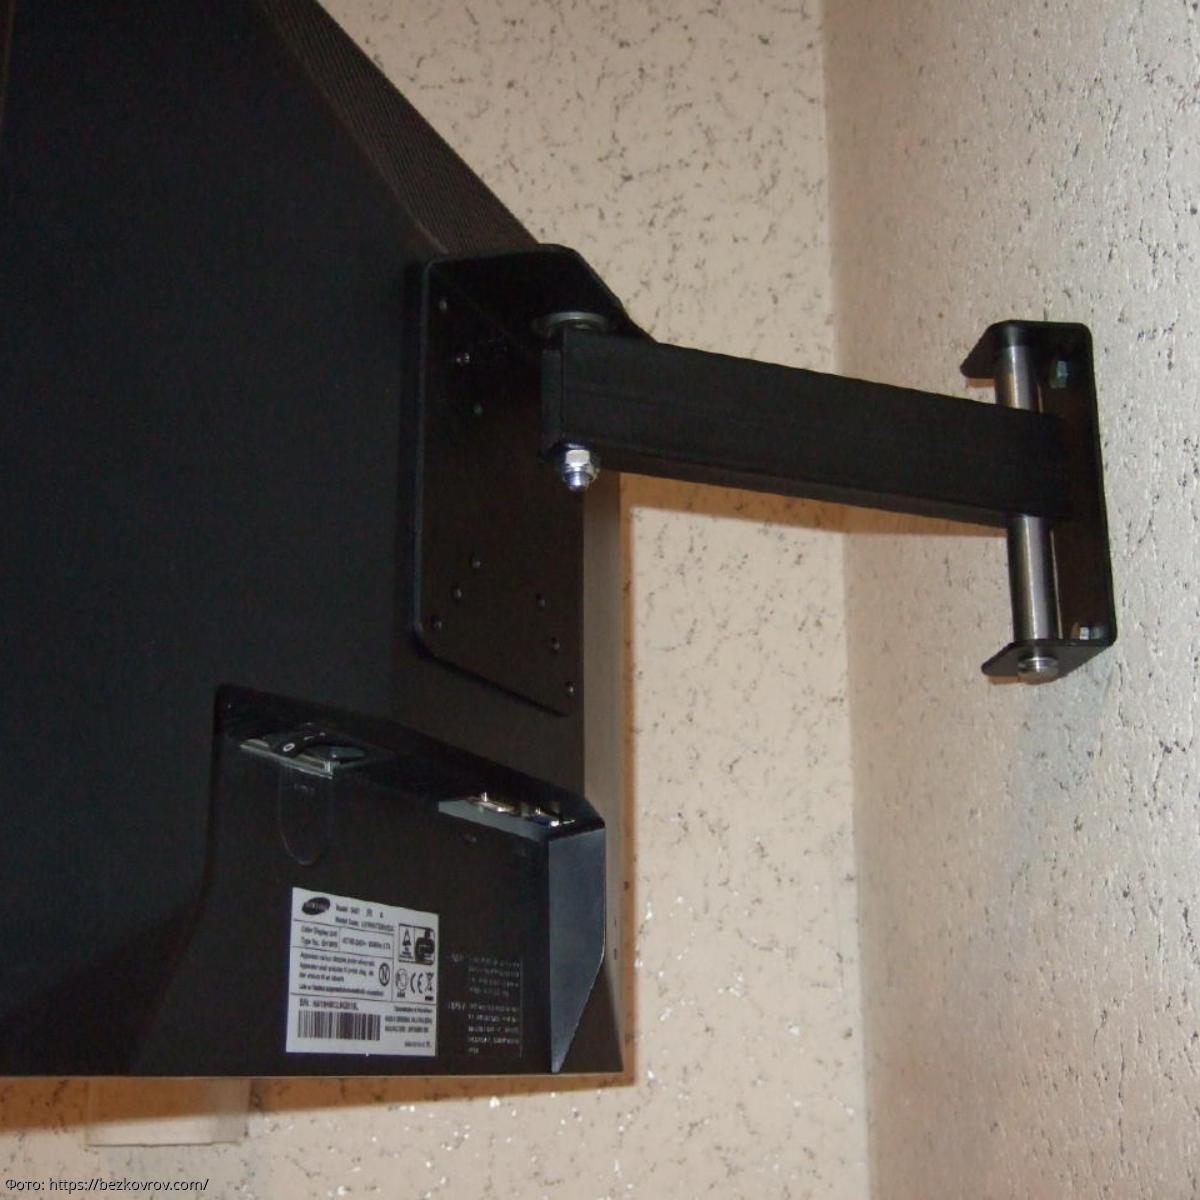 Крепление для телевизора своими руками. Кронштейн для крепления монитора Acer s230hl к стене. Кронштейн для телевизора e306530. Hitechnic кронштейн для ЭЛТ телевизора 14. Кронштейн для телевизора vlf210.